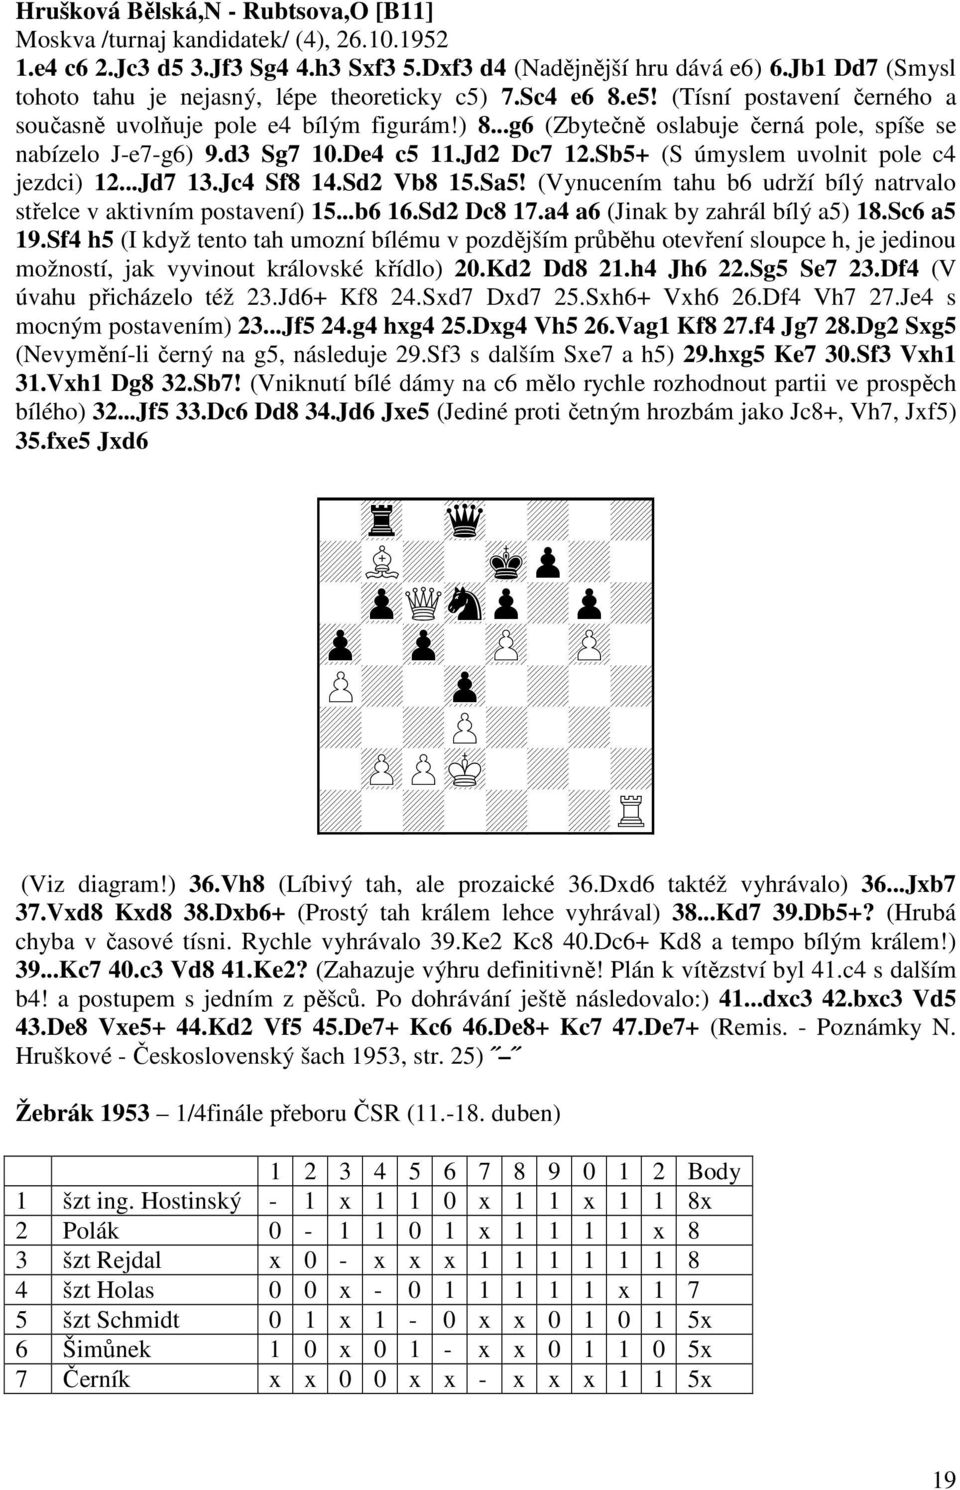 ..g6 (Zbytečně oslabuje černá pole, spíše se nabízelo J-e7-g6) 9.d3 Sg7 10.De4 c5 11.Jd2 Dc7 12.Sb5+ (S úmyslem uvolnit pole c4 jezdci) 12...Jd7 13.Jc4 Sf8 14.Sd2 Vb8 15.Sa5!